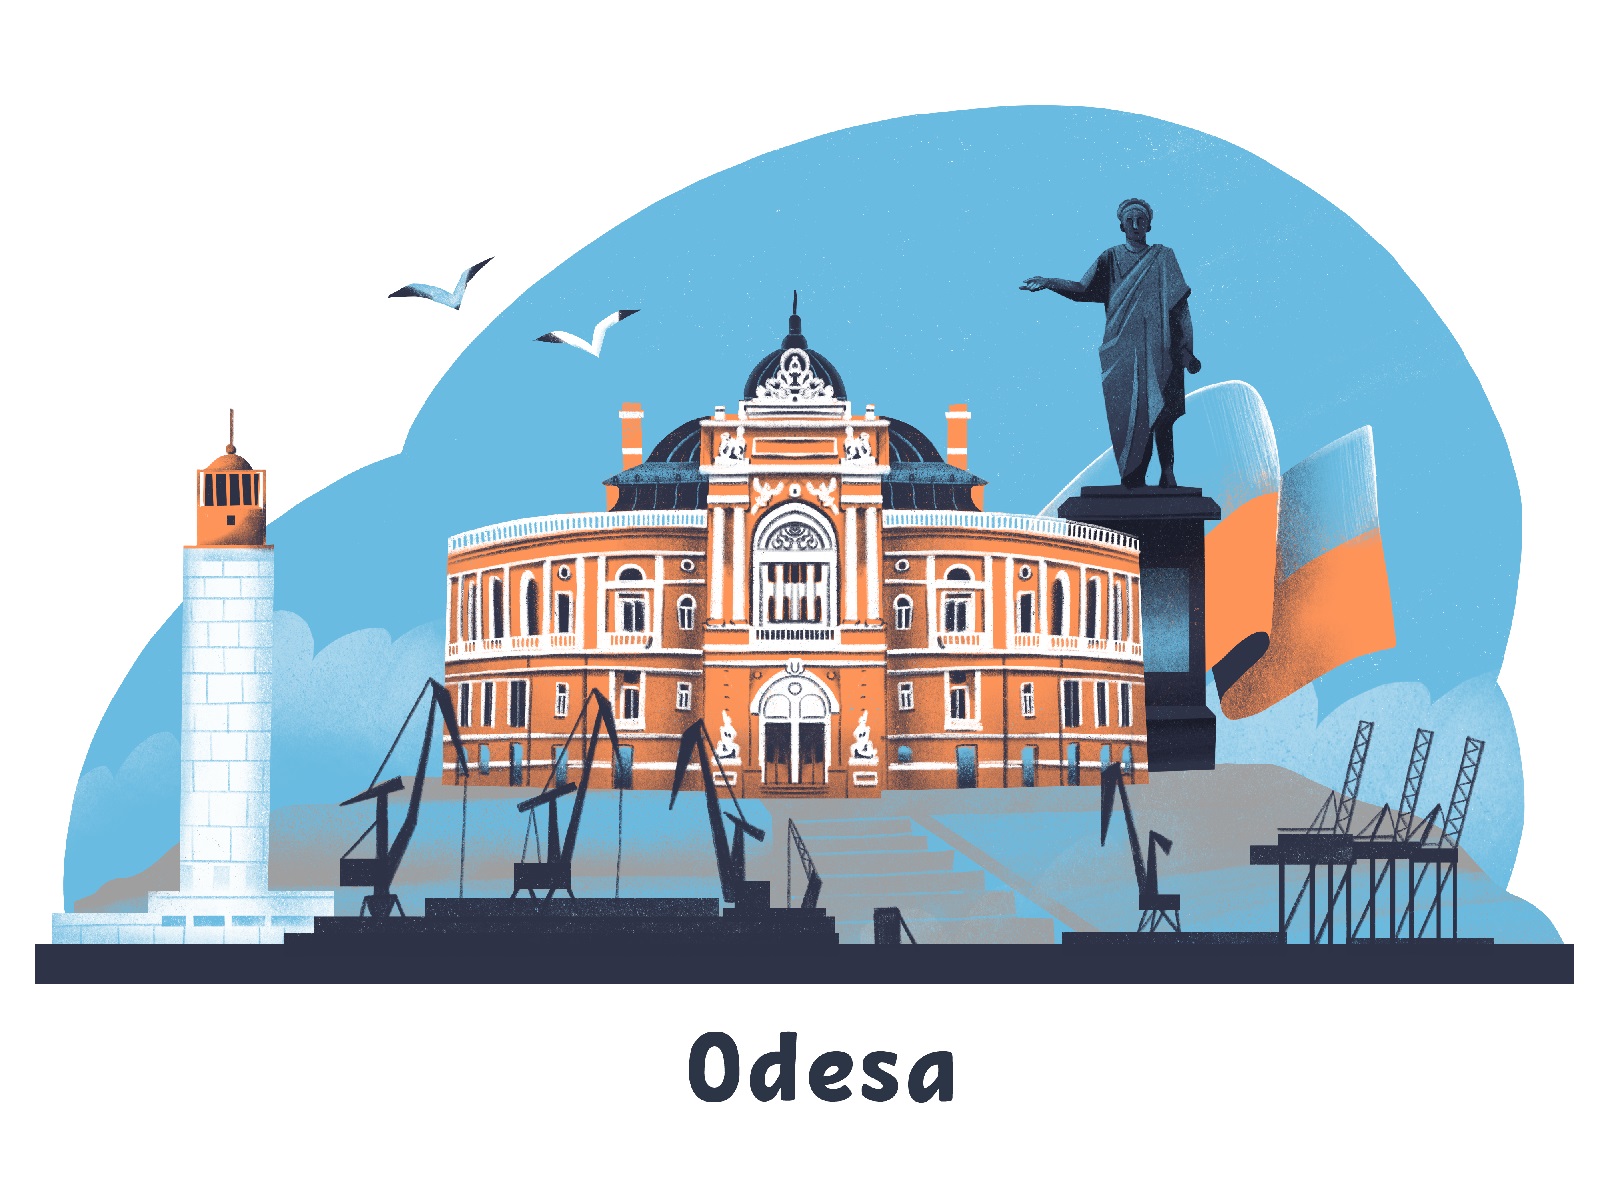 ukrainian cities save odesa tubikarts illustration